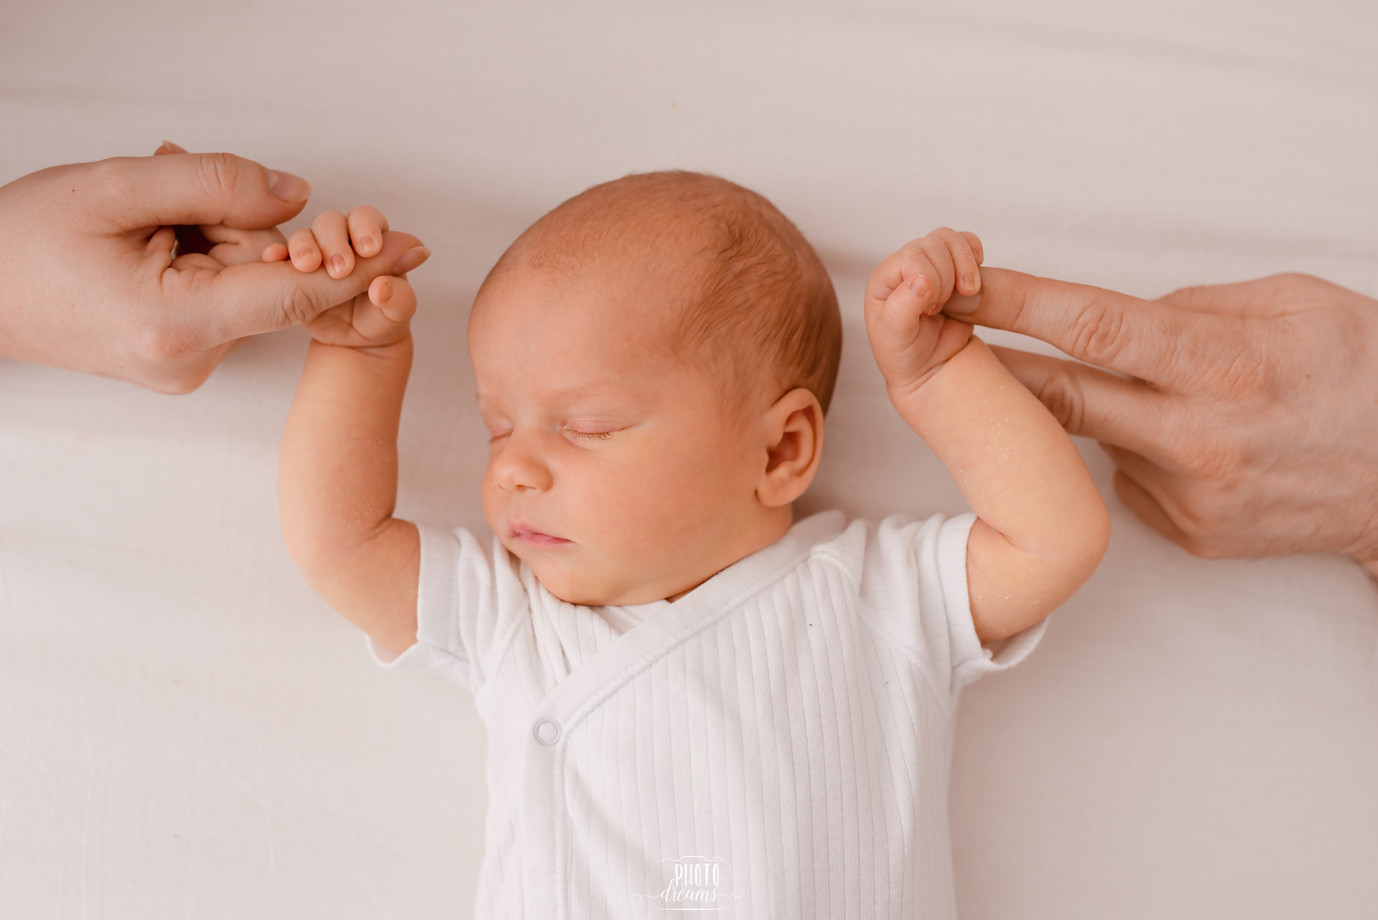 fotograf krakow photo-dreams portfolio zdjecia noworodkow sesje noworodkowe niemowlę